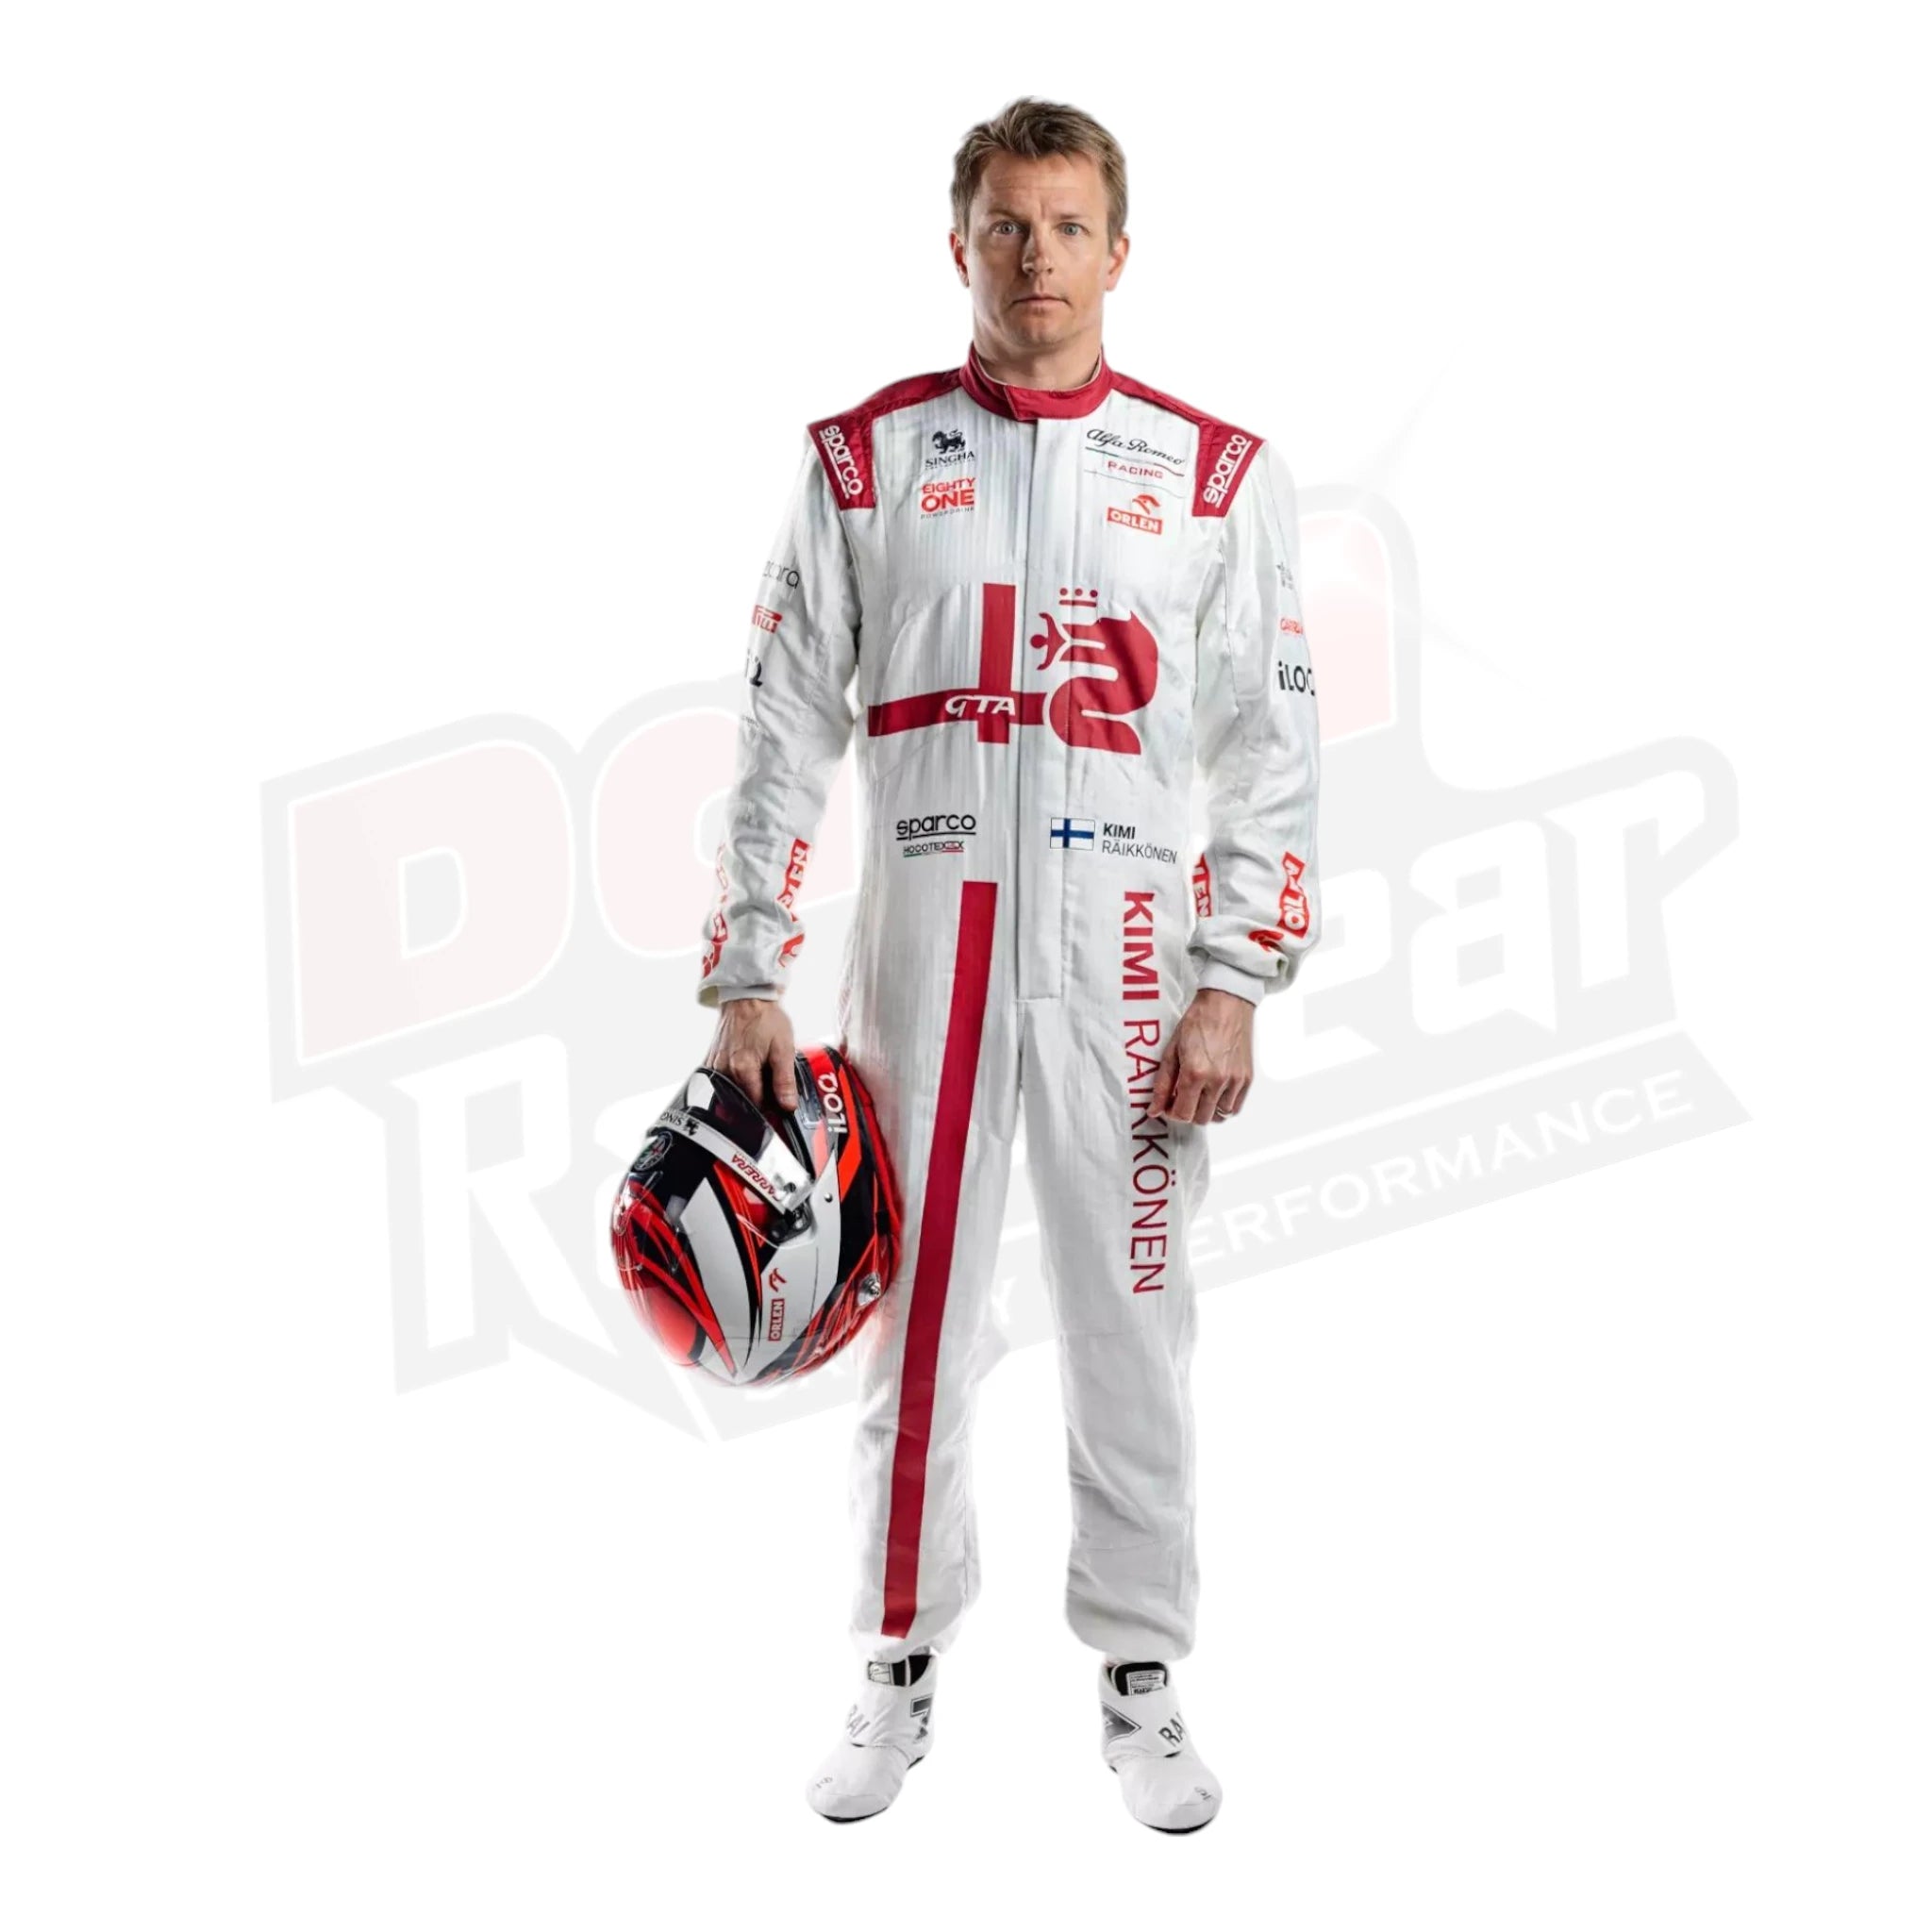 2021 Kimi Räikkönen Alfa Romeo F1 Team Race Suit